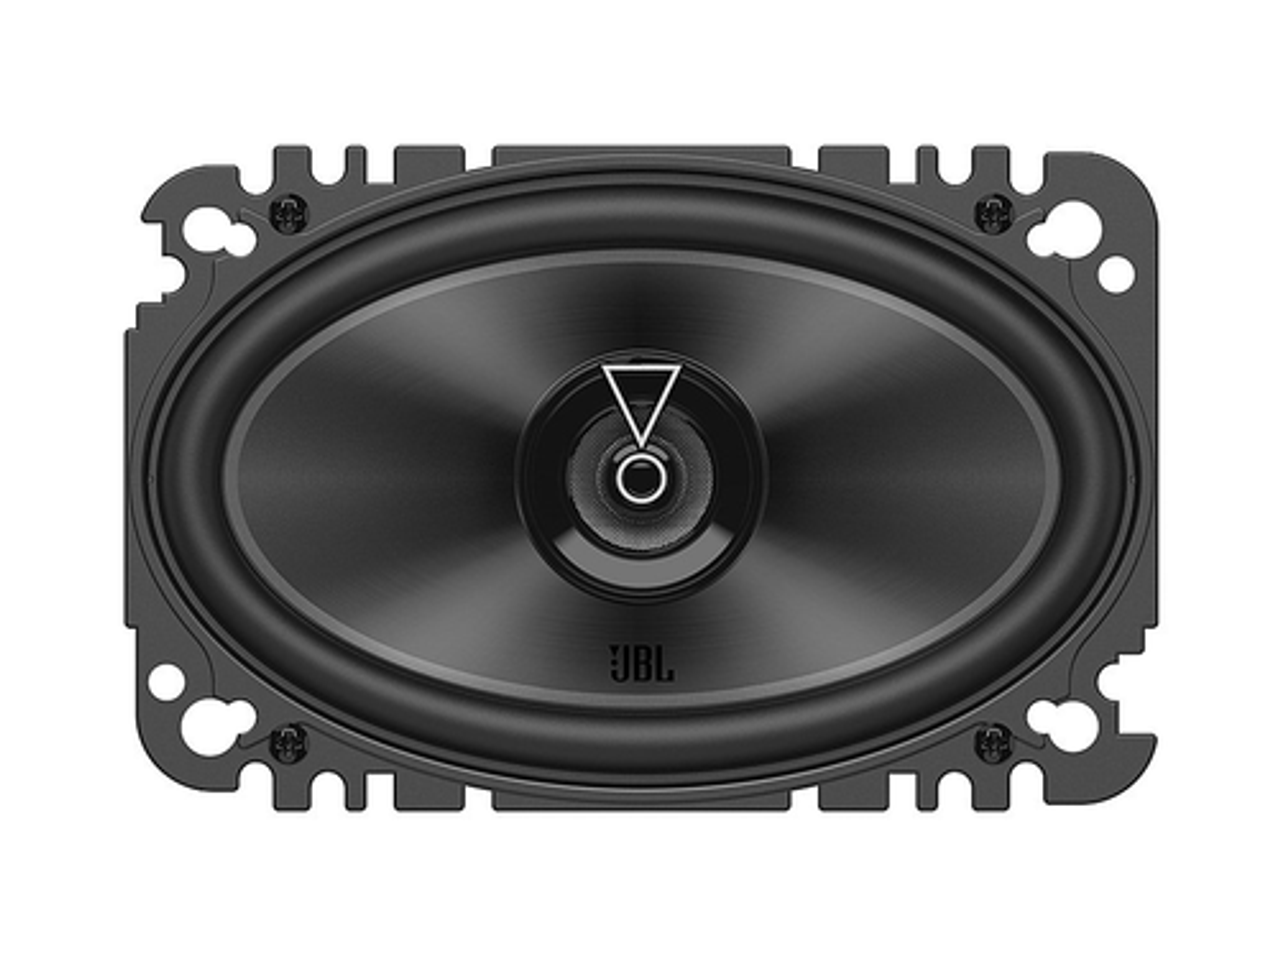 JBL - 4” X 6” Two-way car audio speaker no grill - Black